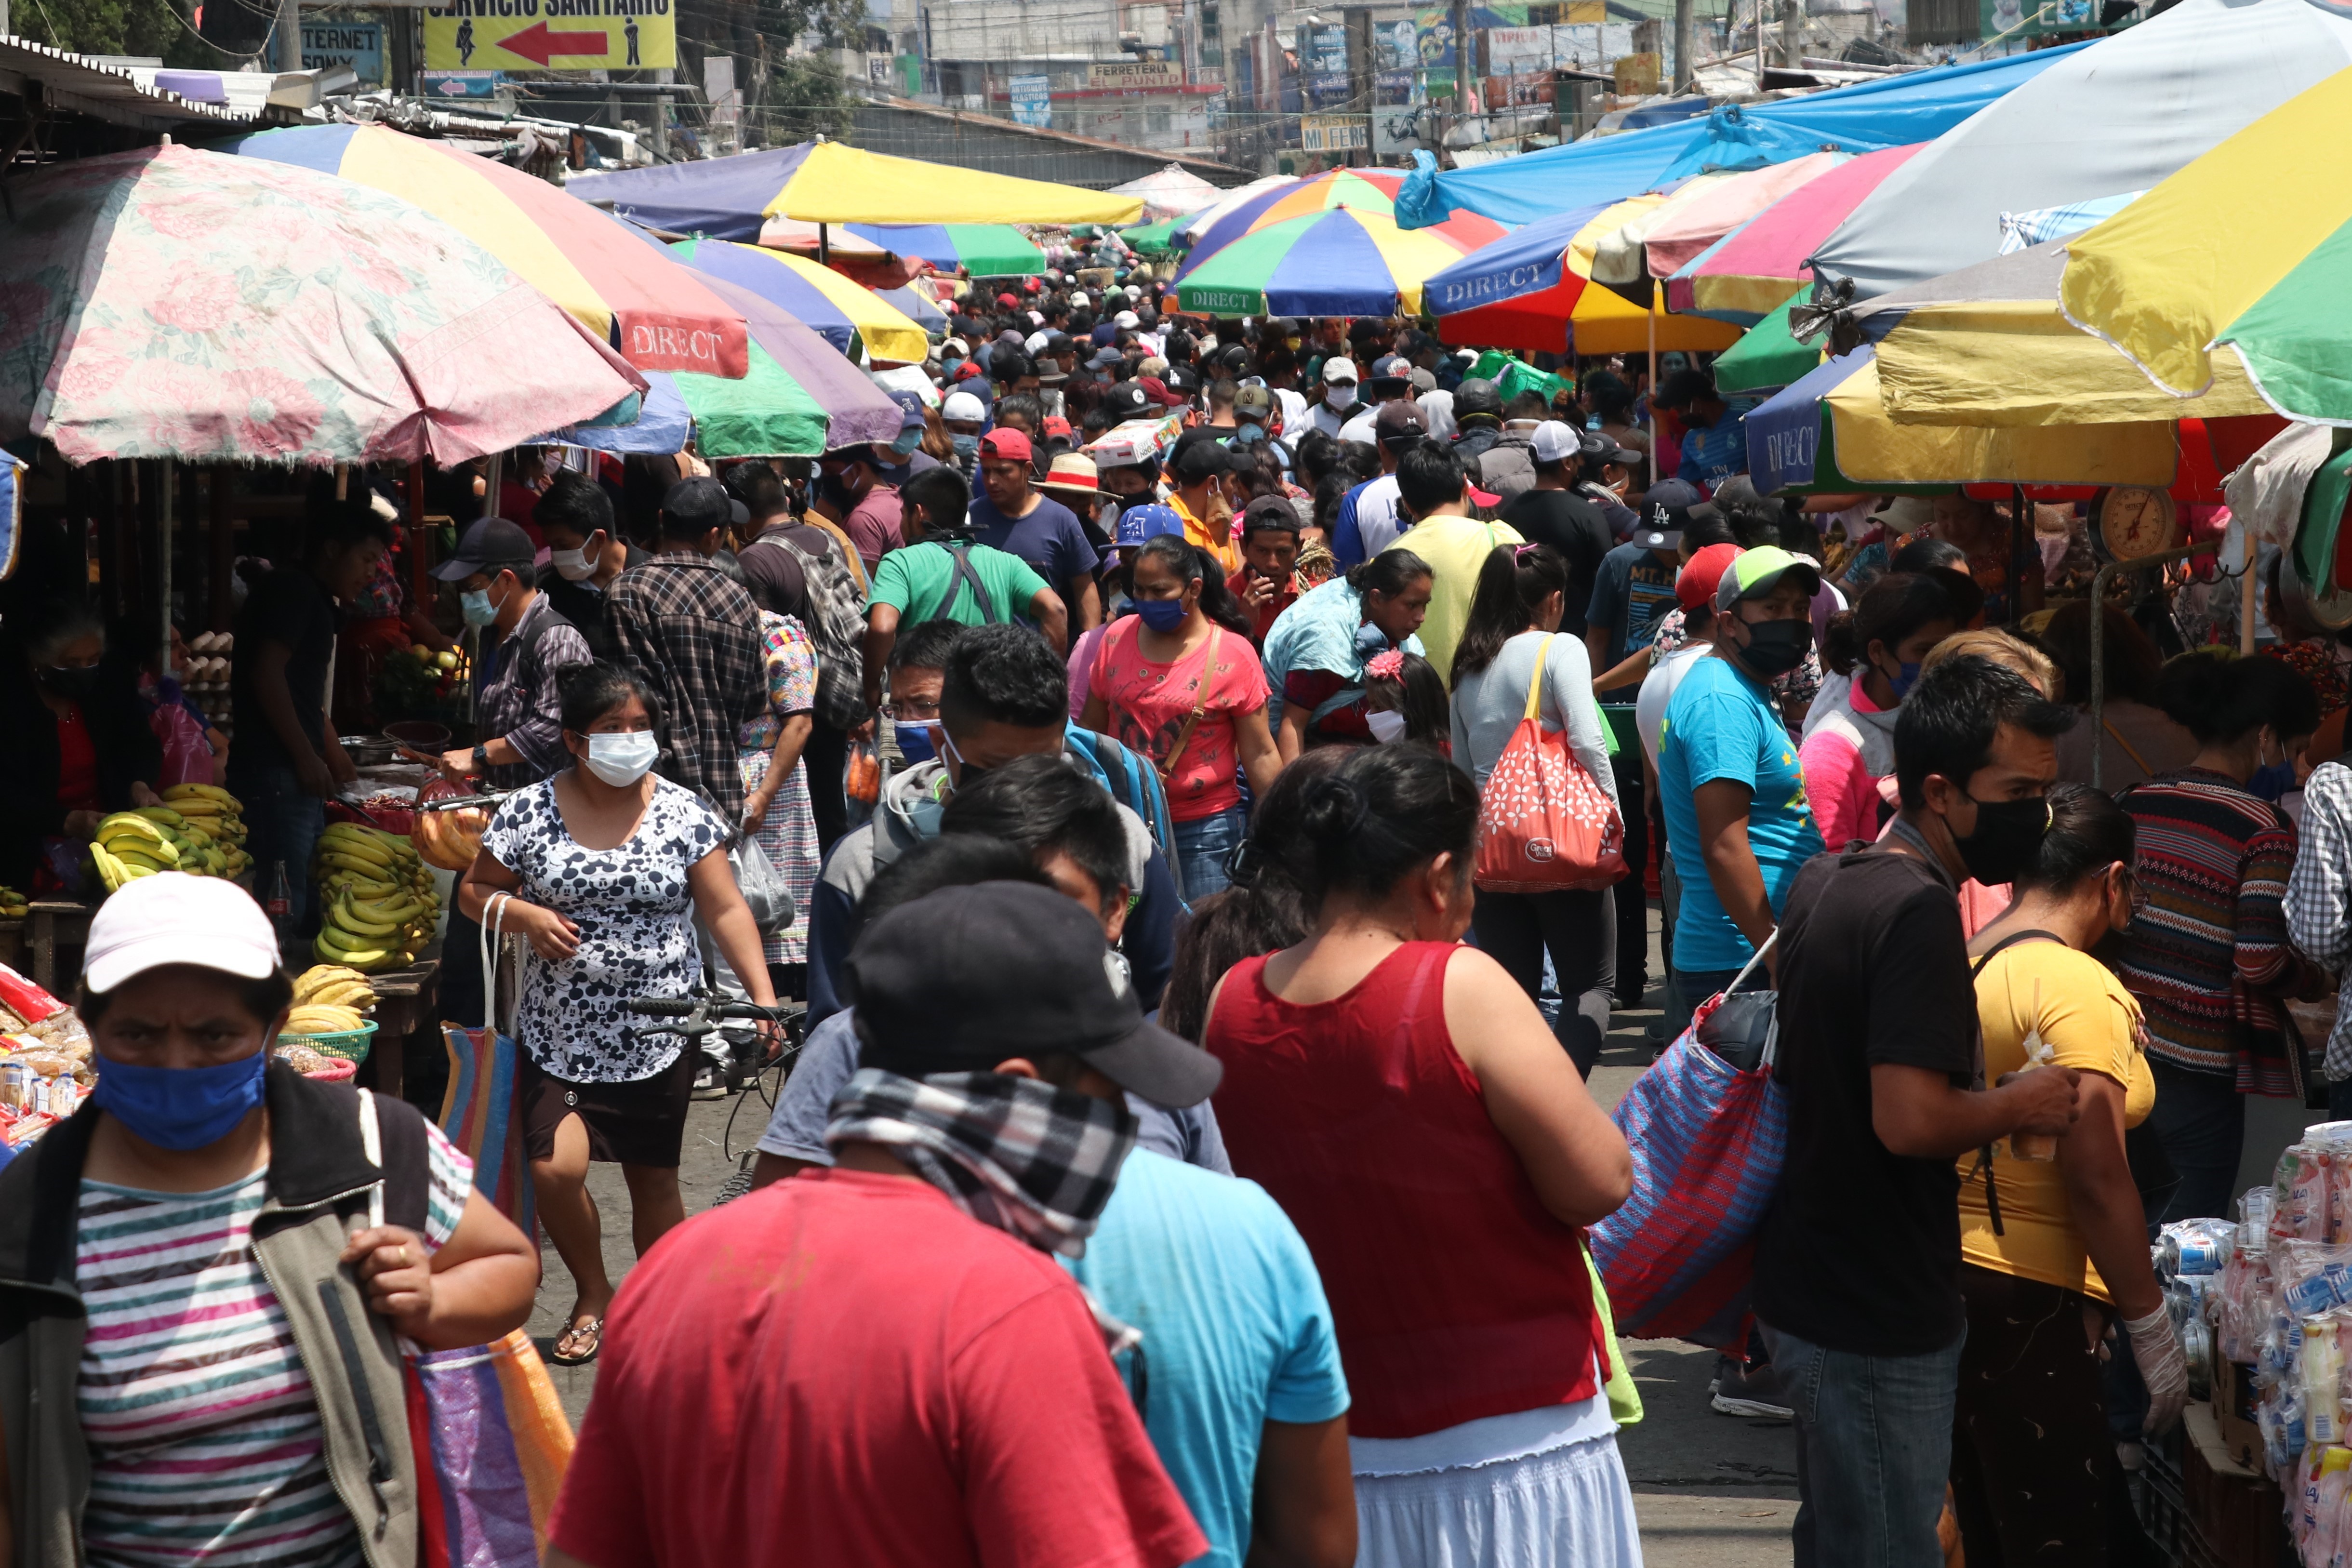 Así fue la aglomeración de personas este domingo en el mercado Minerva. (Foto Prensa Libre: Raúl Juárez)